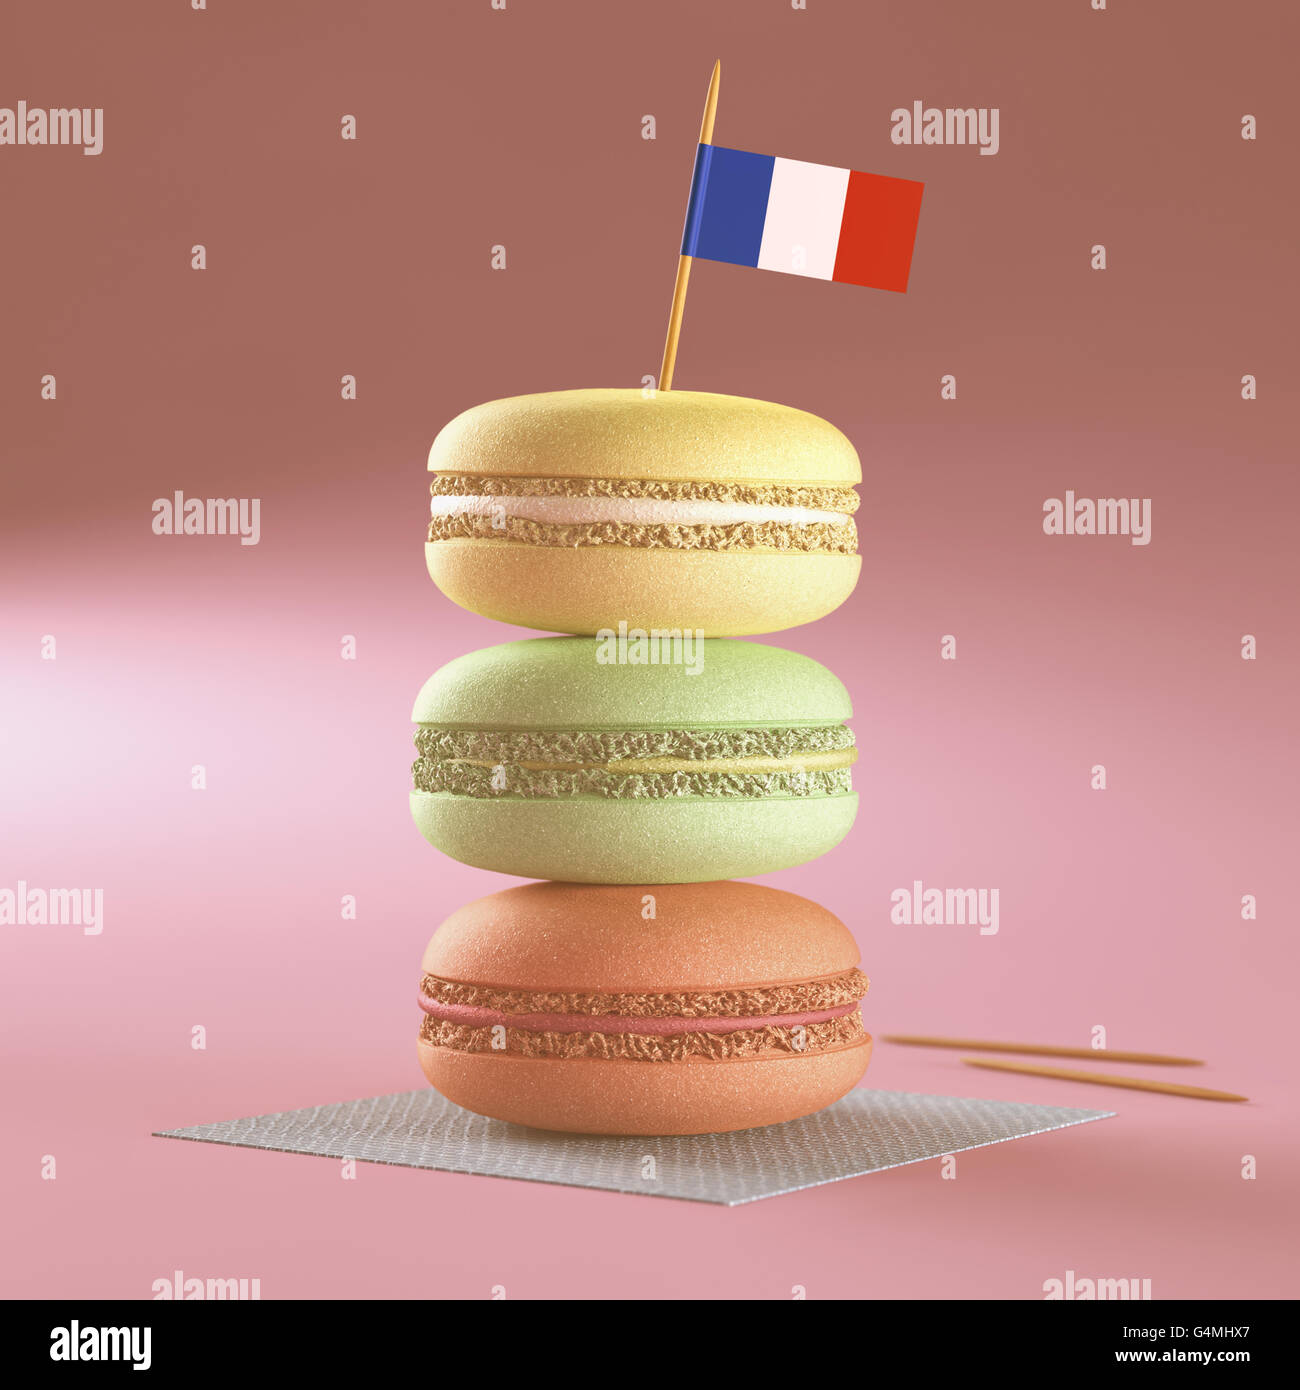 3D'illustrazione. Amaretti al francese, impilati con la bandiera francese sulla parte superiore. Foto Stock